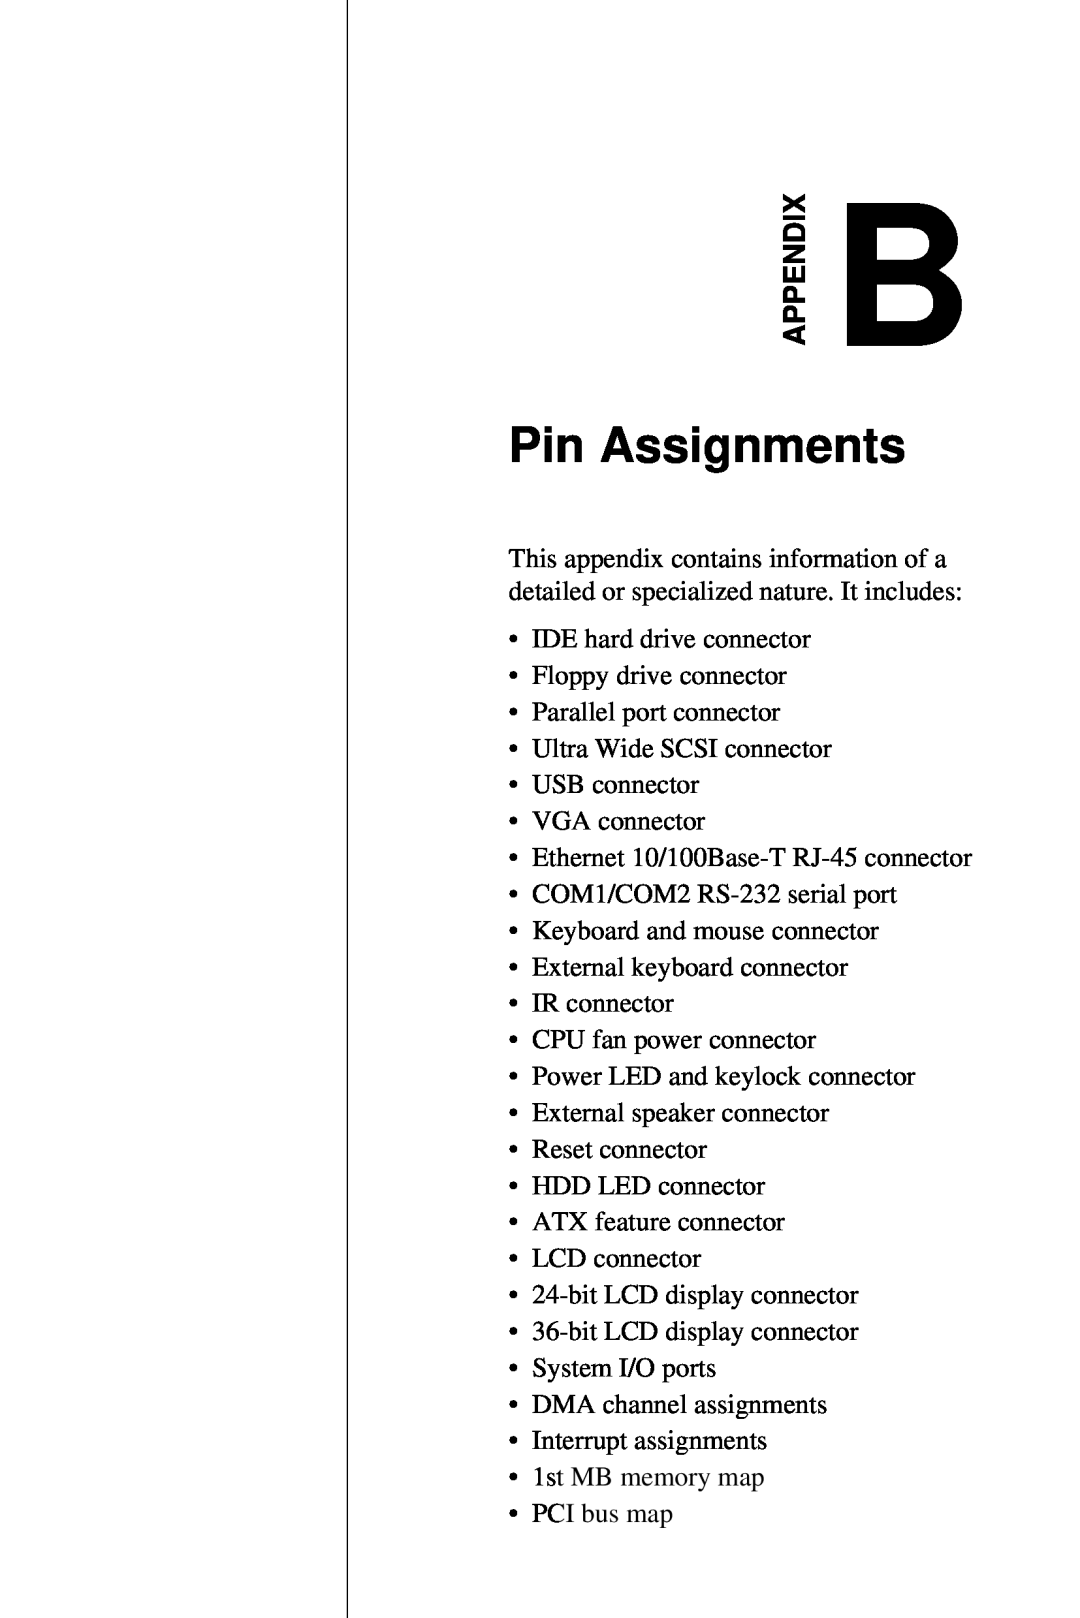 Advantech PCA-6359 user manual Pin Assignments, Appendix 